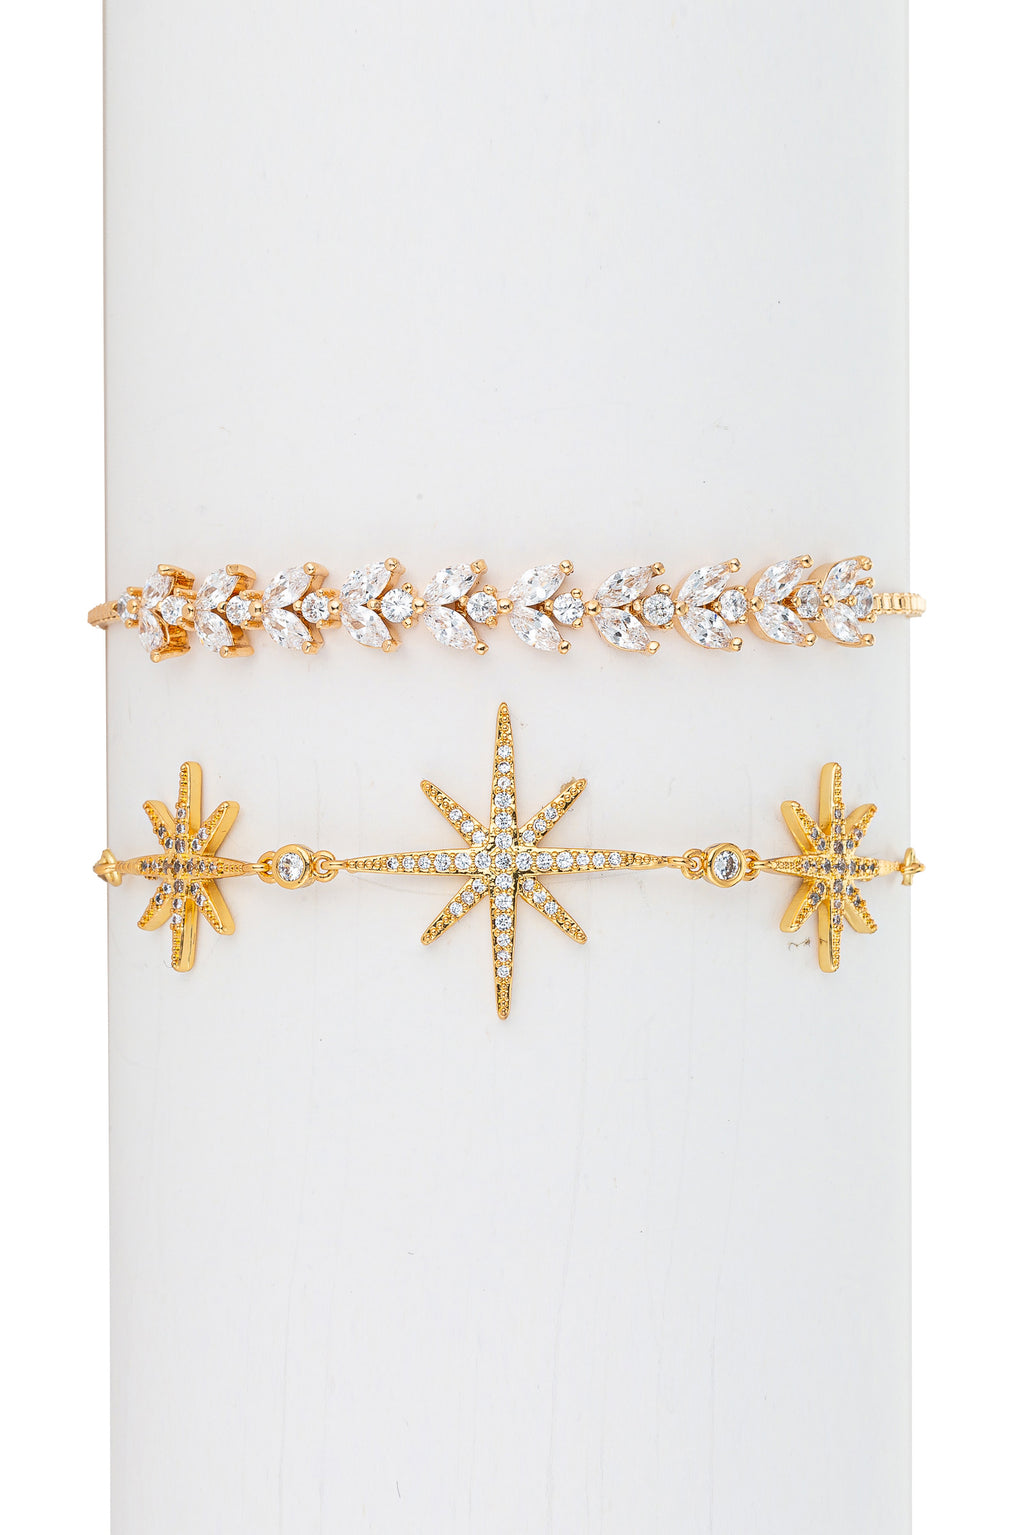 North Star & leaf 18k gold plated bracelet set studded with CZ crystals.